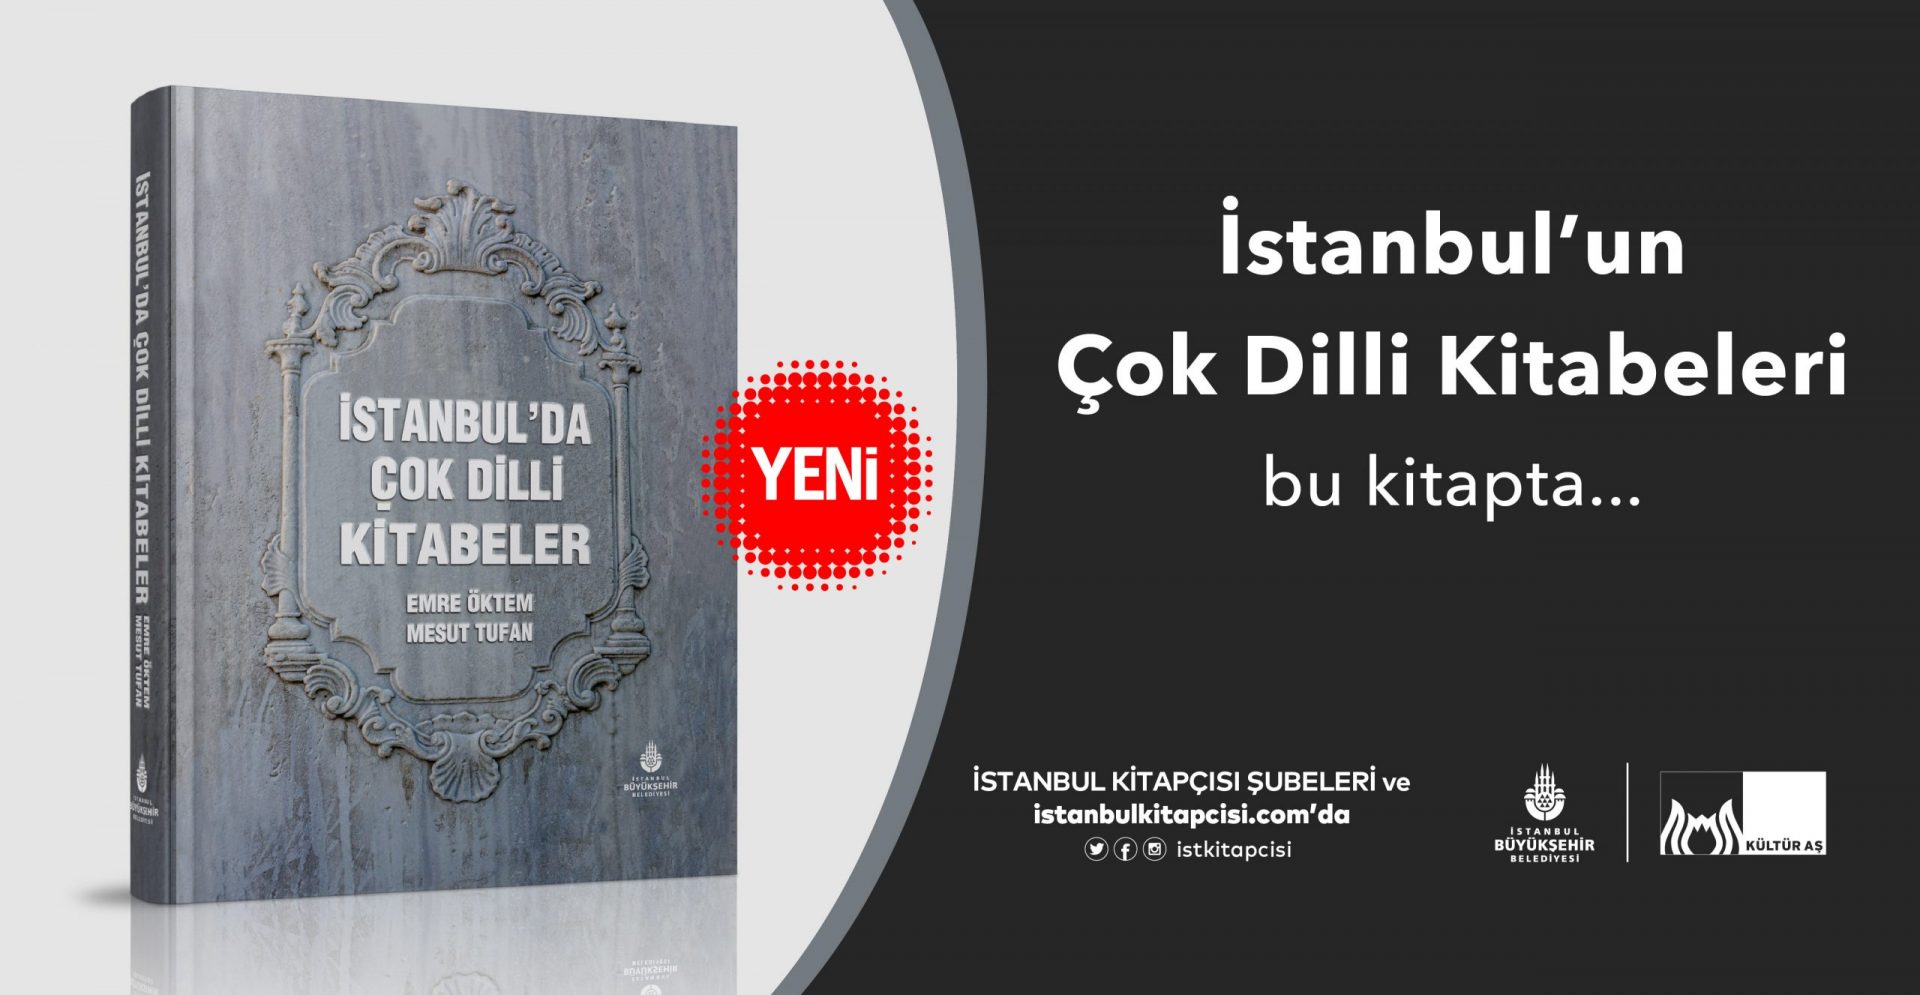 İstanbul’da Çok Dilli Kitabeler okurlarla buluştu!